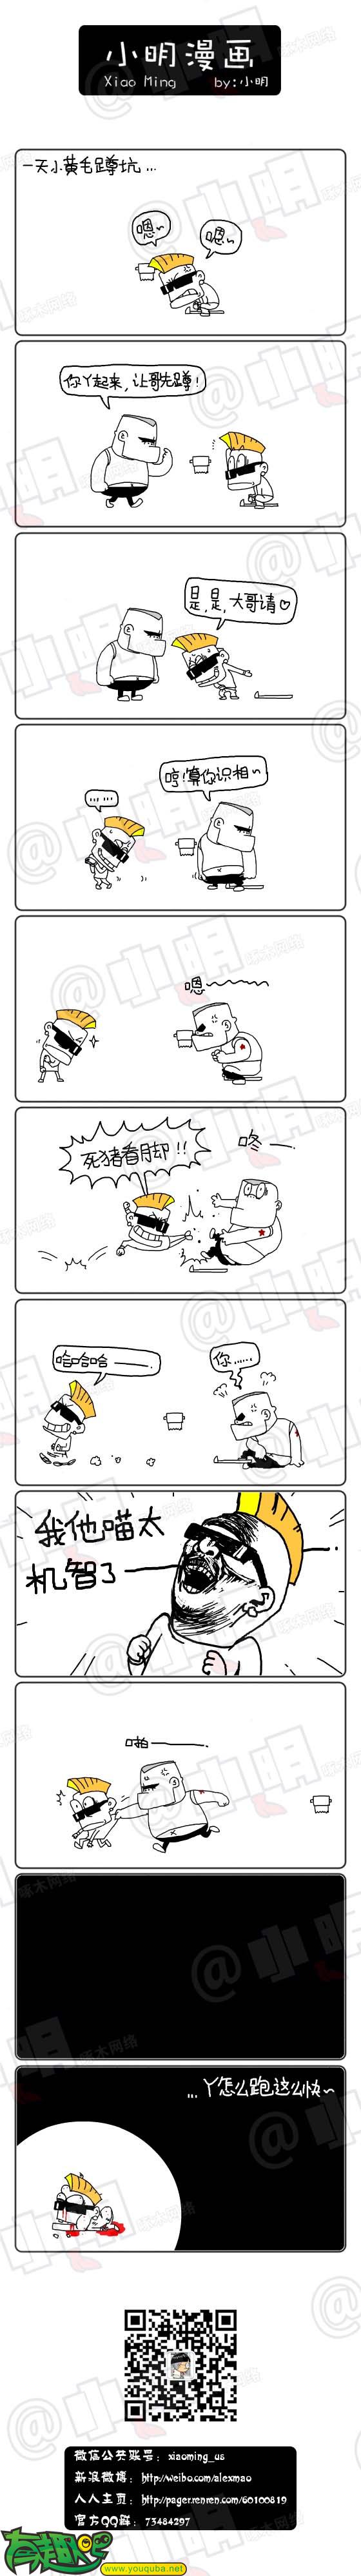 小明系列漫画:大哥你先来